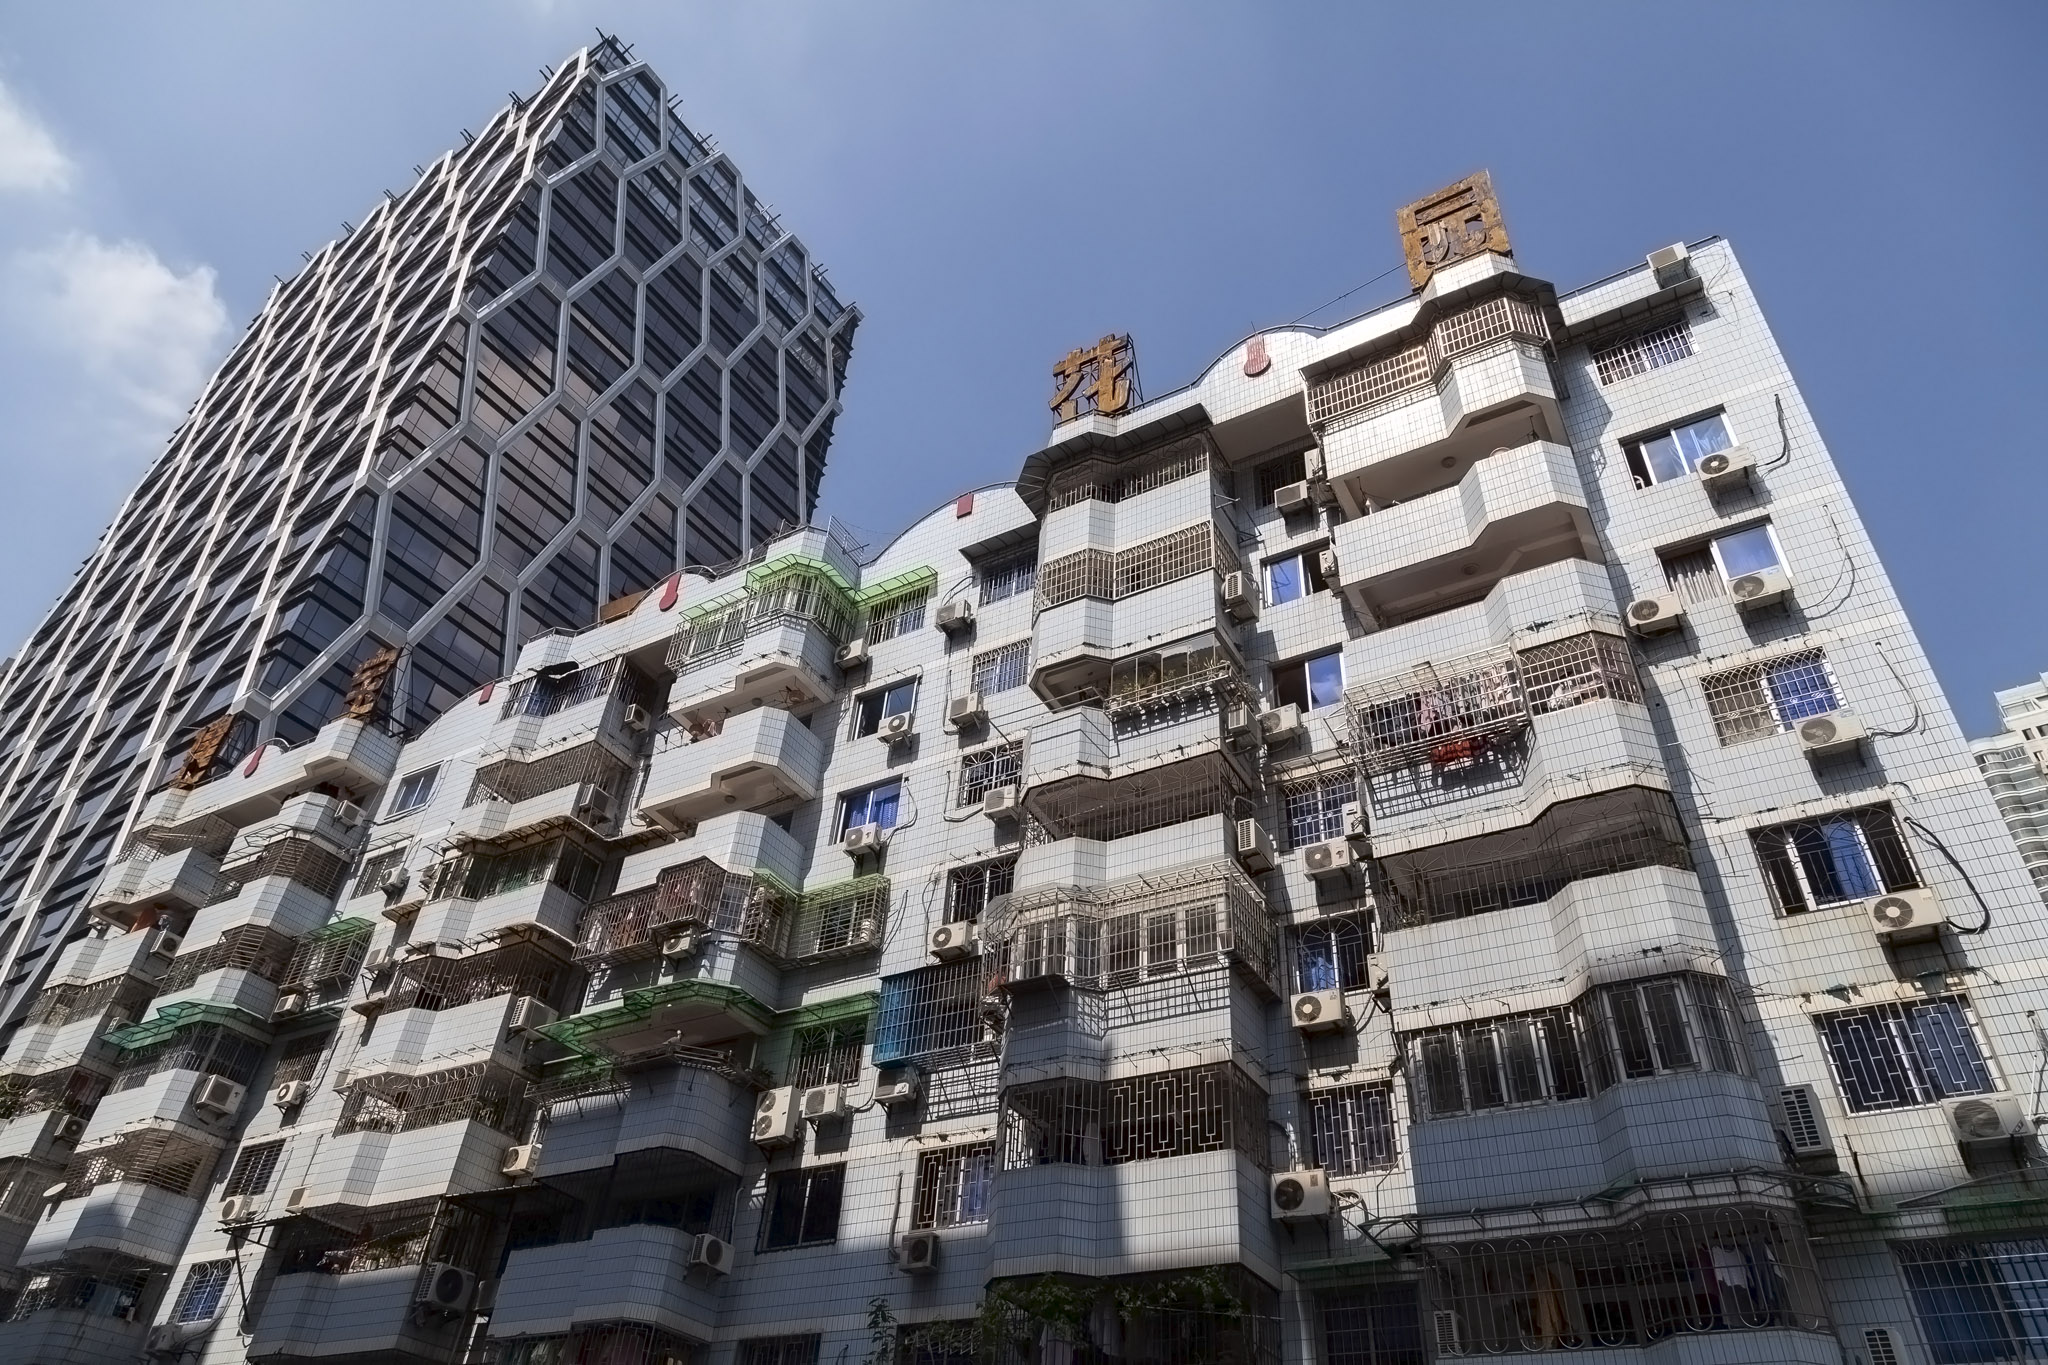 Xiamen Buildings